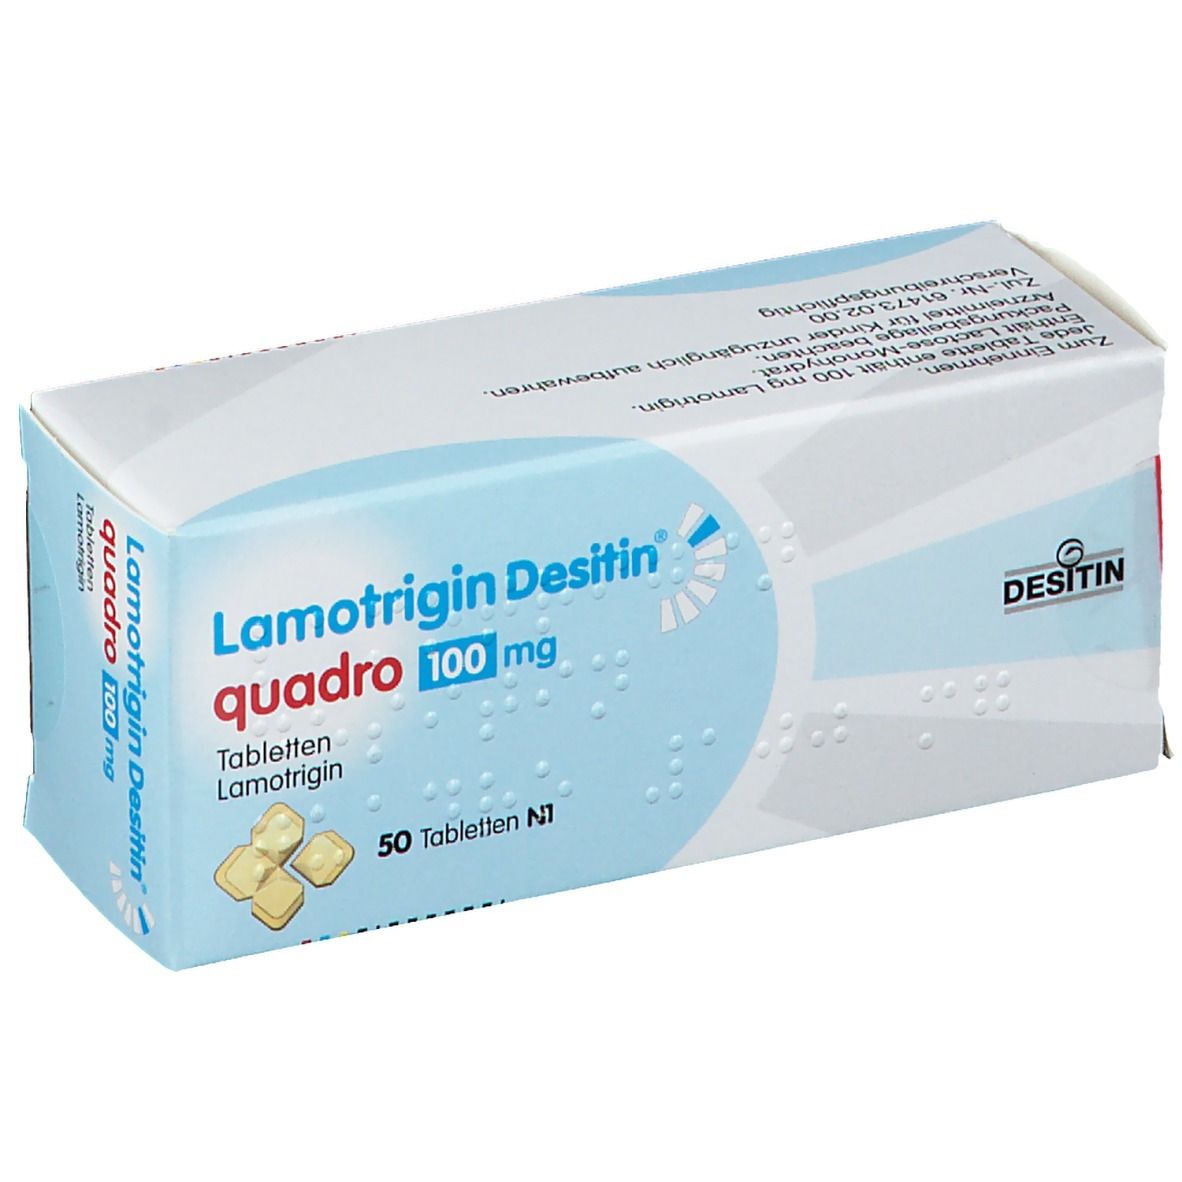 Lamotrigin Desitin® quadro 100 mg